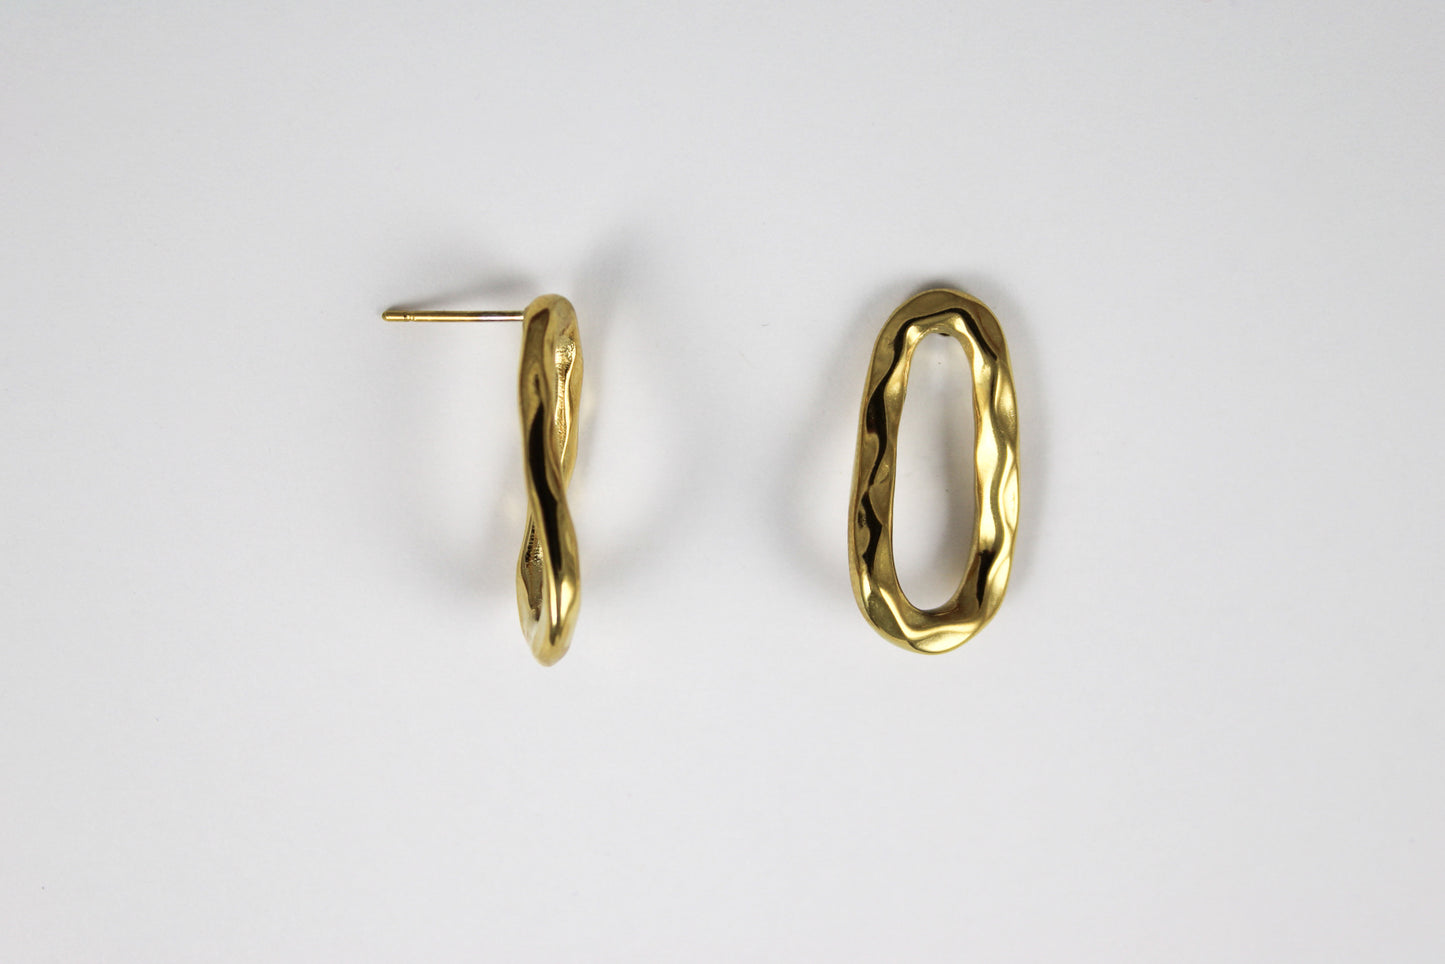 Golden Horna earrings